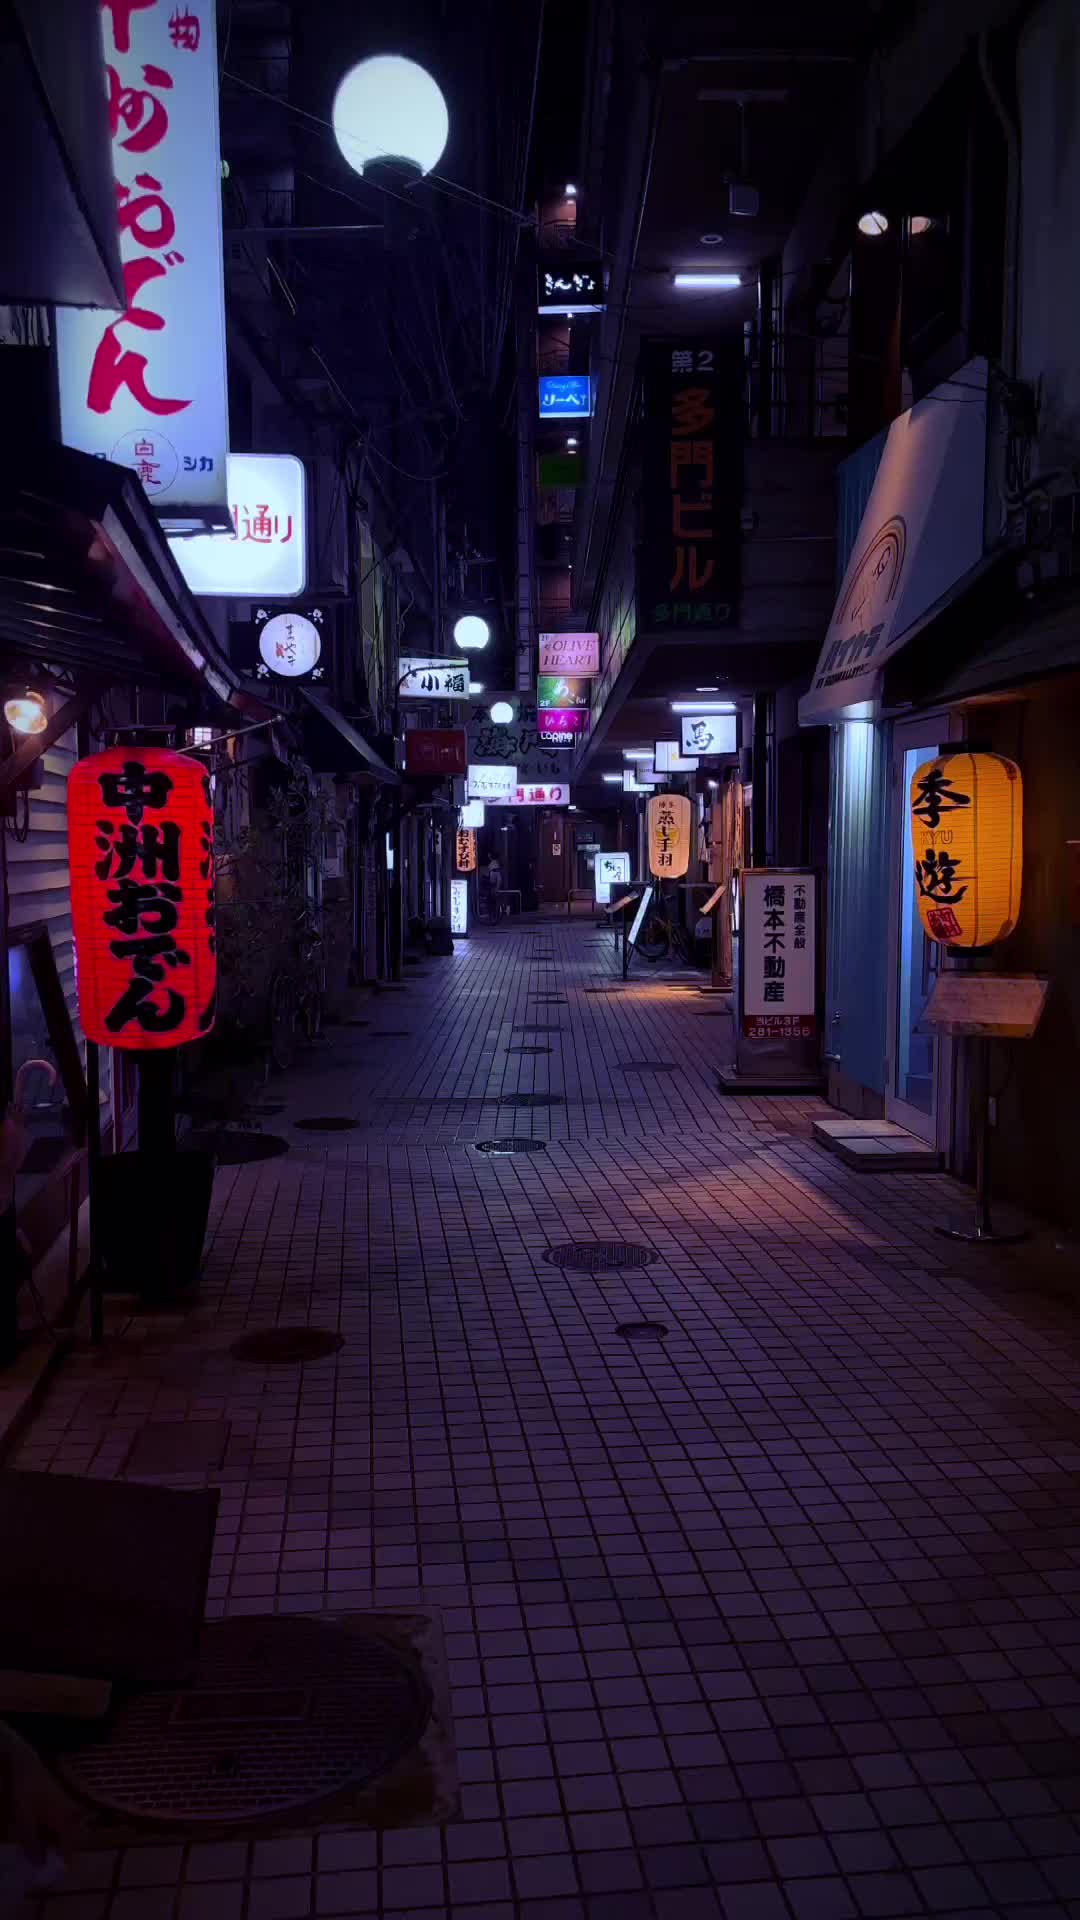 Late Night in Fukuoka: Illuminated Streets & Alleys